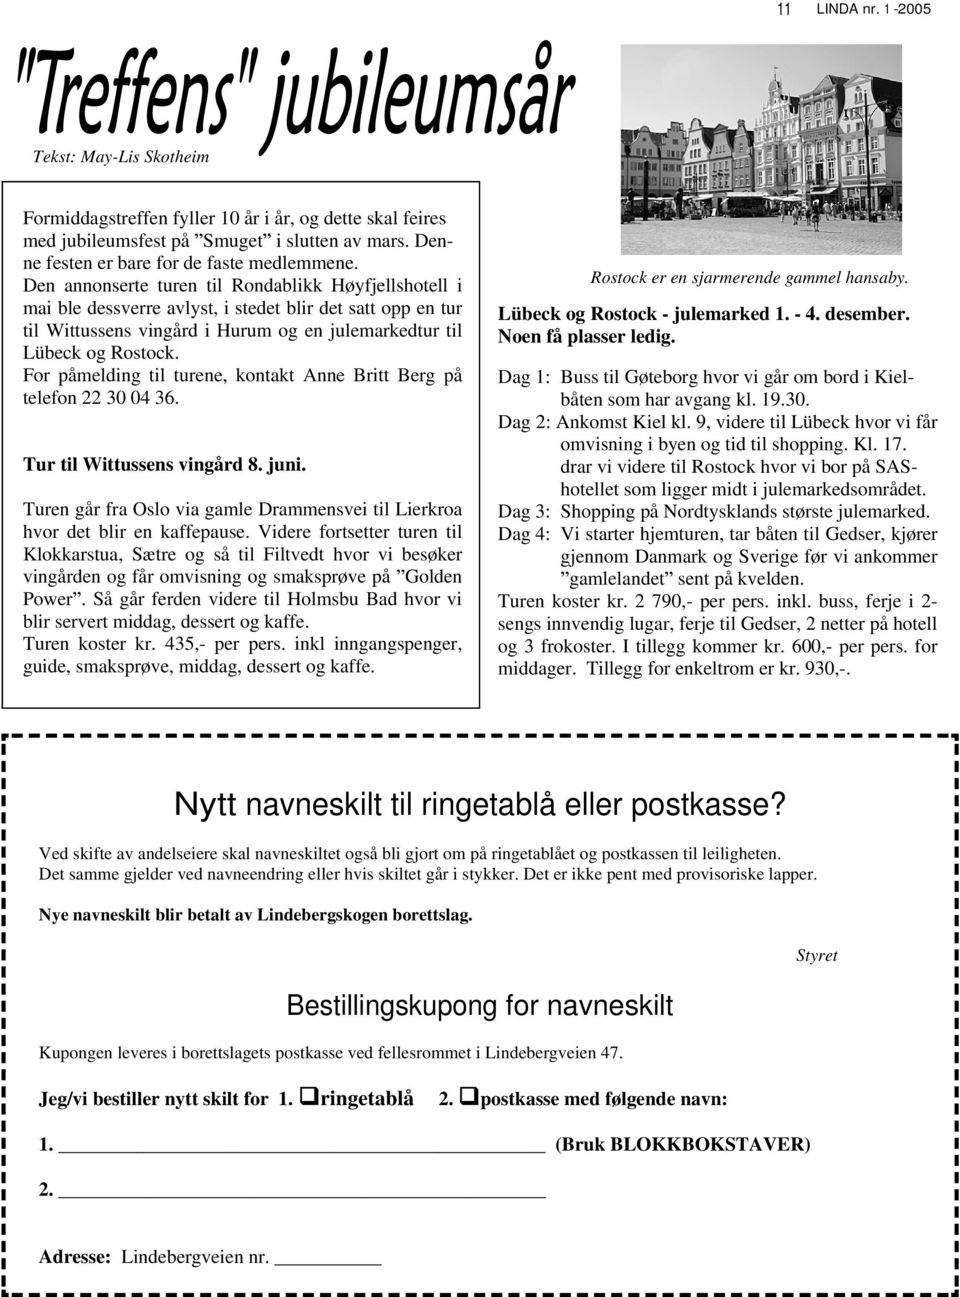 For påmelding til turene, kontakt Anne Britt Berg på telefon 22 30 04 36. Tur til Wittussens vingård 8. juni. Turen går fra Oslo via gamle Drammensvei til Lierkroa hvor det blir en kaffepause.